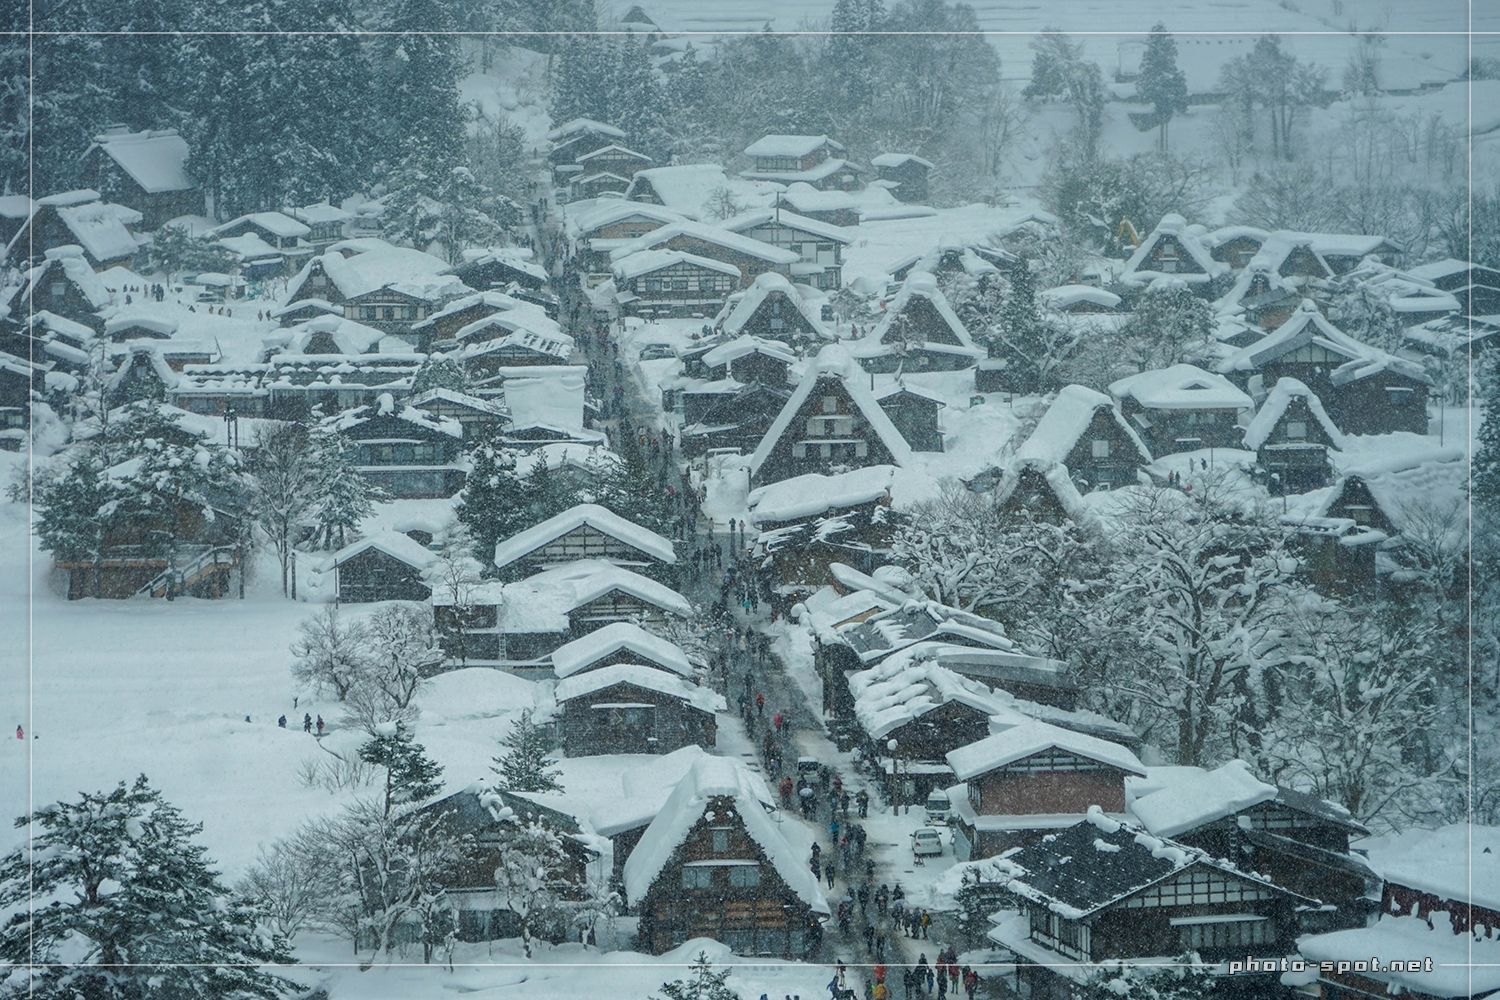 雪の白川郷 荻町城跡展望台からズーム撮影